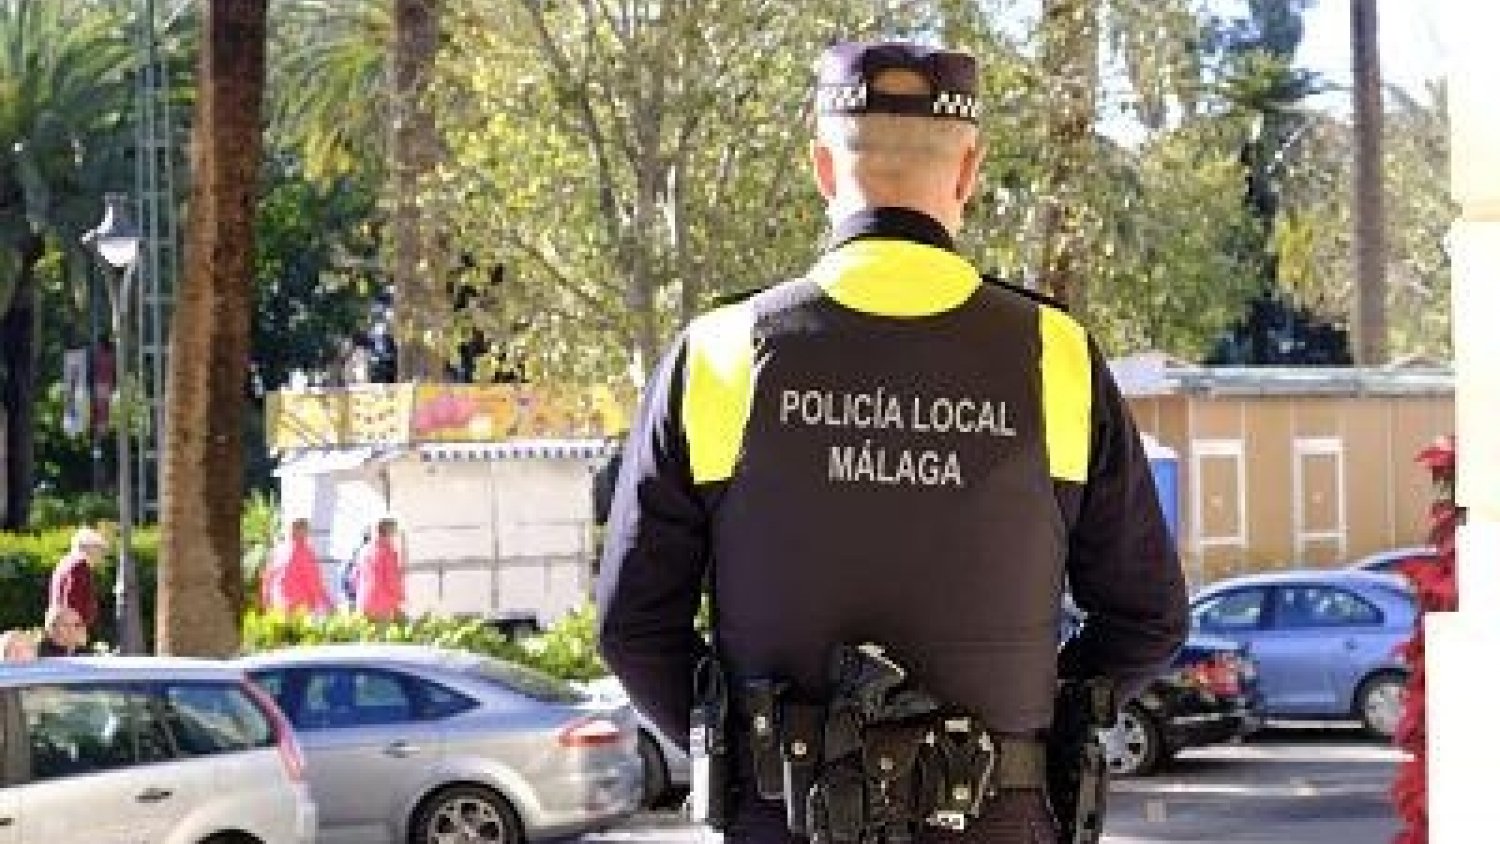 La Policía Local tramita 63 denuncias en materia de control de ruidos y convivencia en la última semana